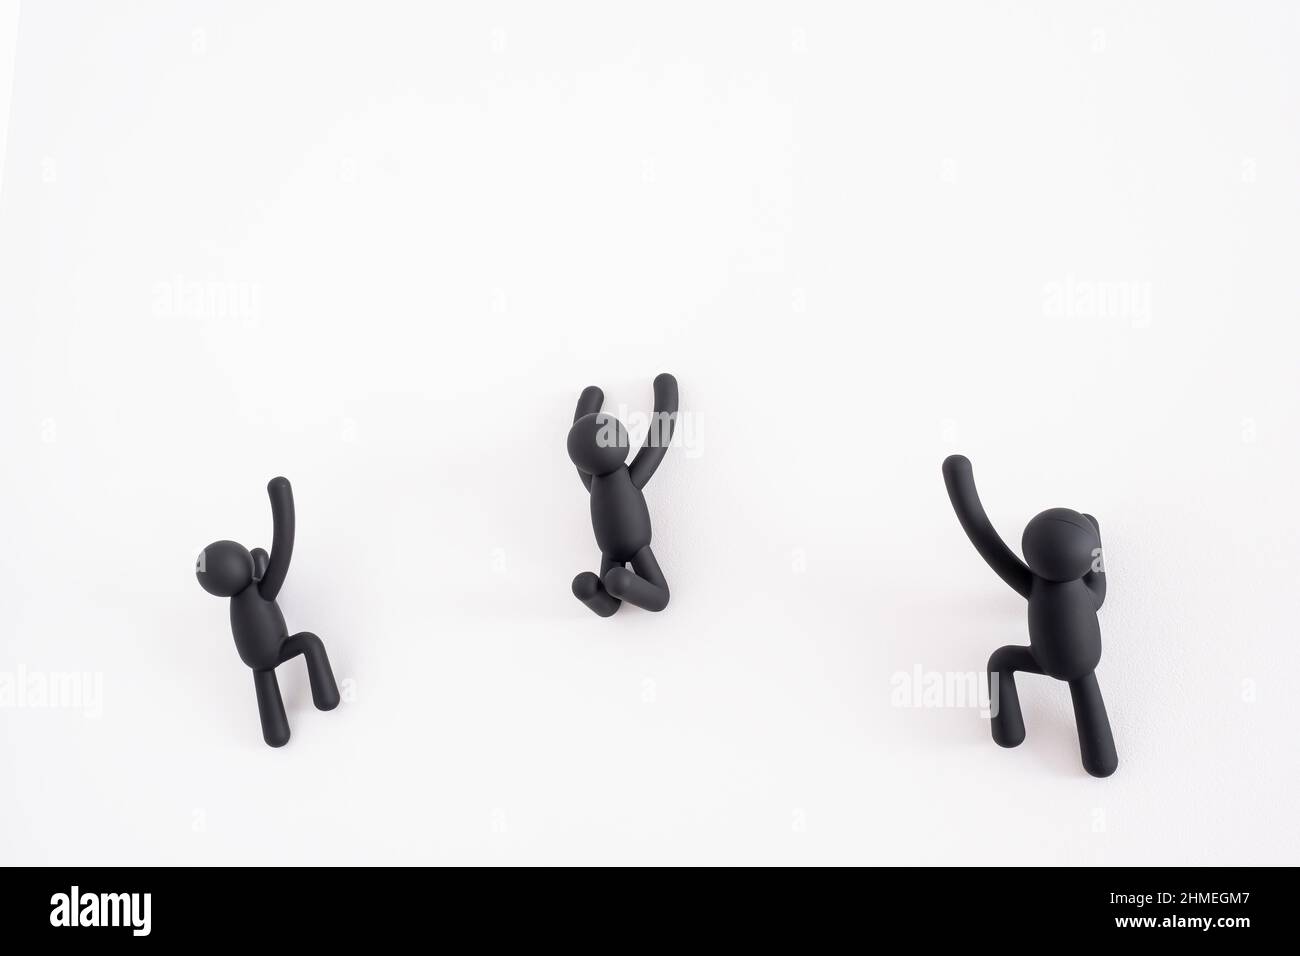 3 schwarze 3D Marionetten, die über einen weißen Hintergrund klettern, menschlicher Charakter, Person, die an einer weißen Wand hängt, Konzept der Selbstverbesserung, helfen sich gegenseitig Stockfoto